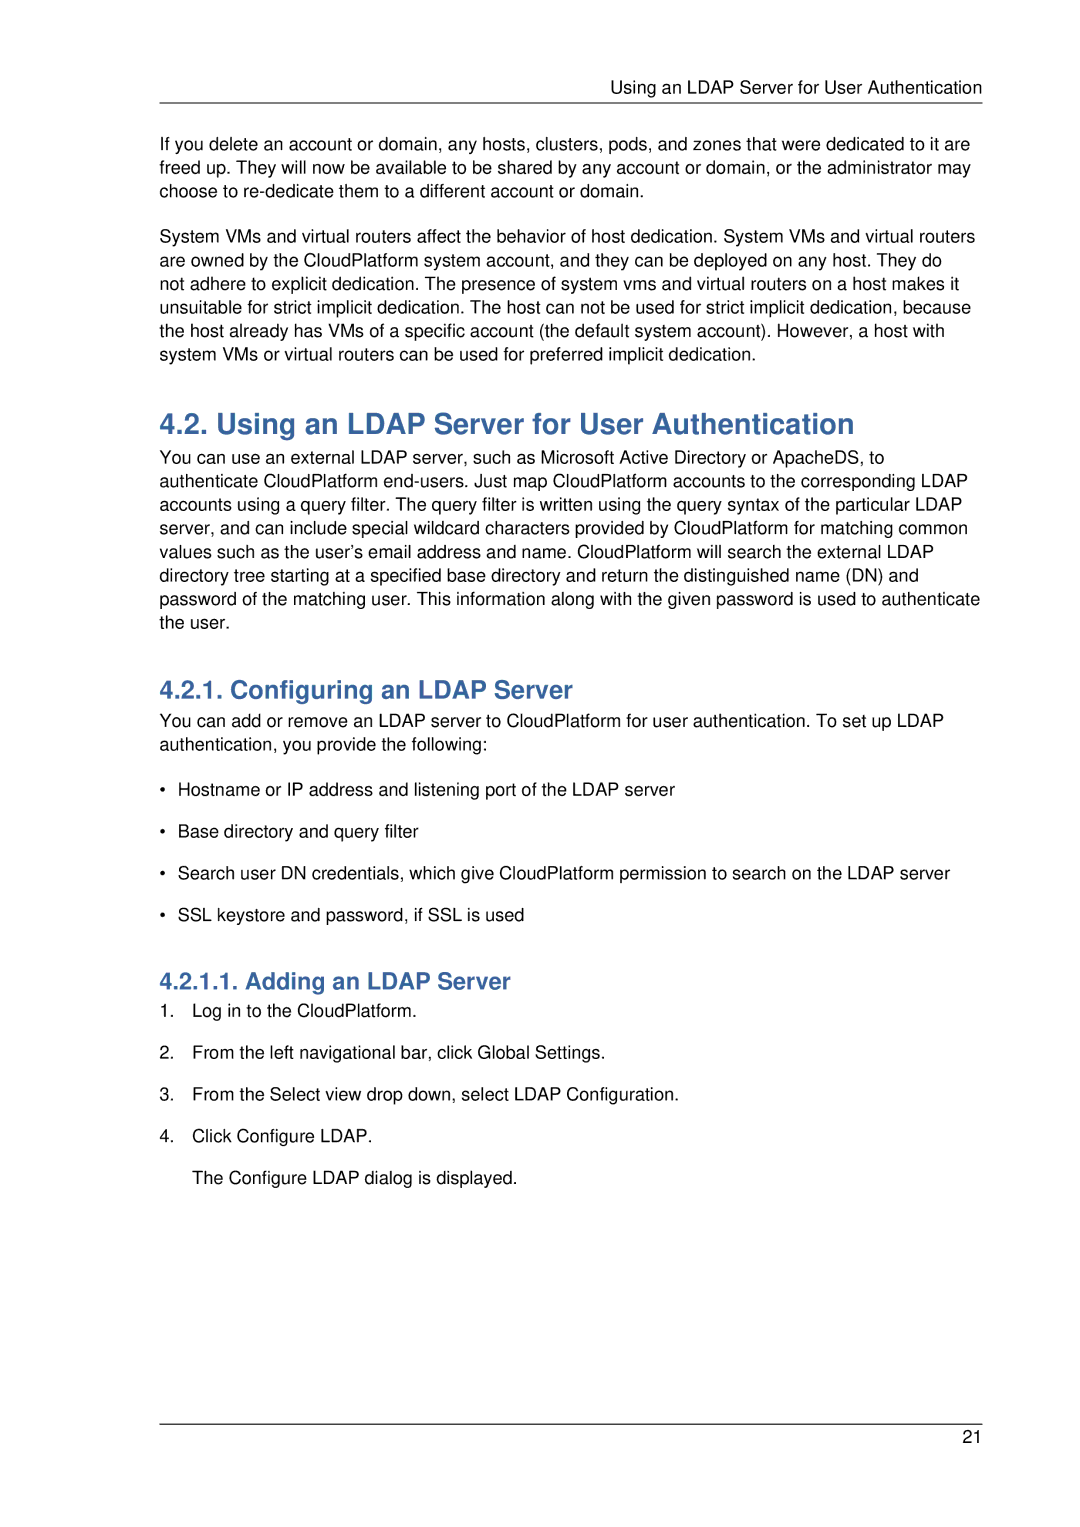 Citrix Systems 4.2 manual Using an Ldap Server for User Authentication, Configuring an Ldap Server, Adding an Ldap Server 